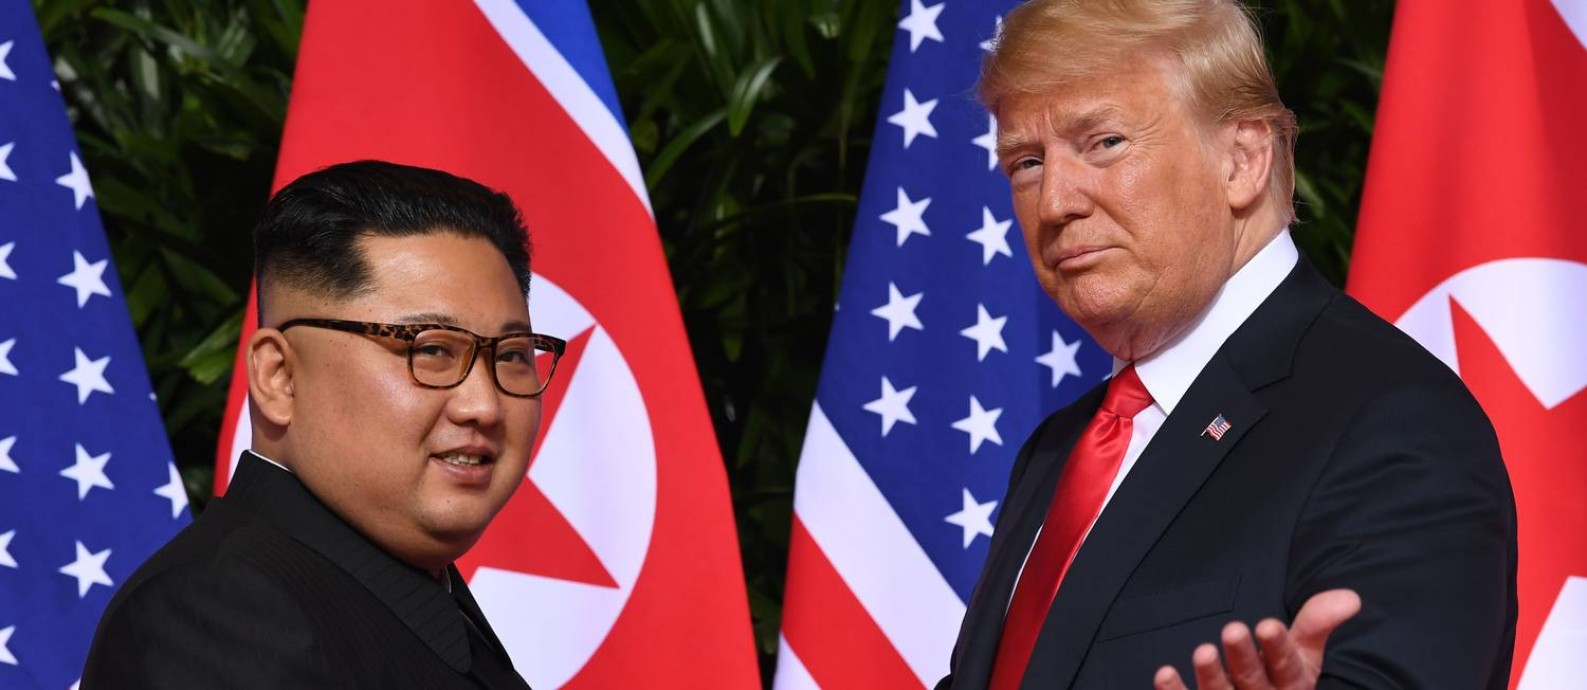 Líder norte-coreano, Kim Jong-un, e presidente dos EUA, Donald Trump, se cumprimentam no seu primeiro encontro frente a frente, realizado em 12 de junho de 2018 e Cingapura Foto: SAUL LOEB / AFP